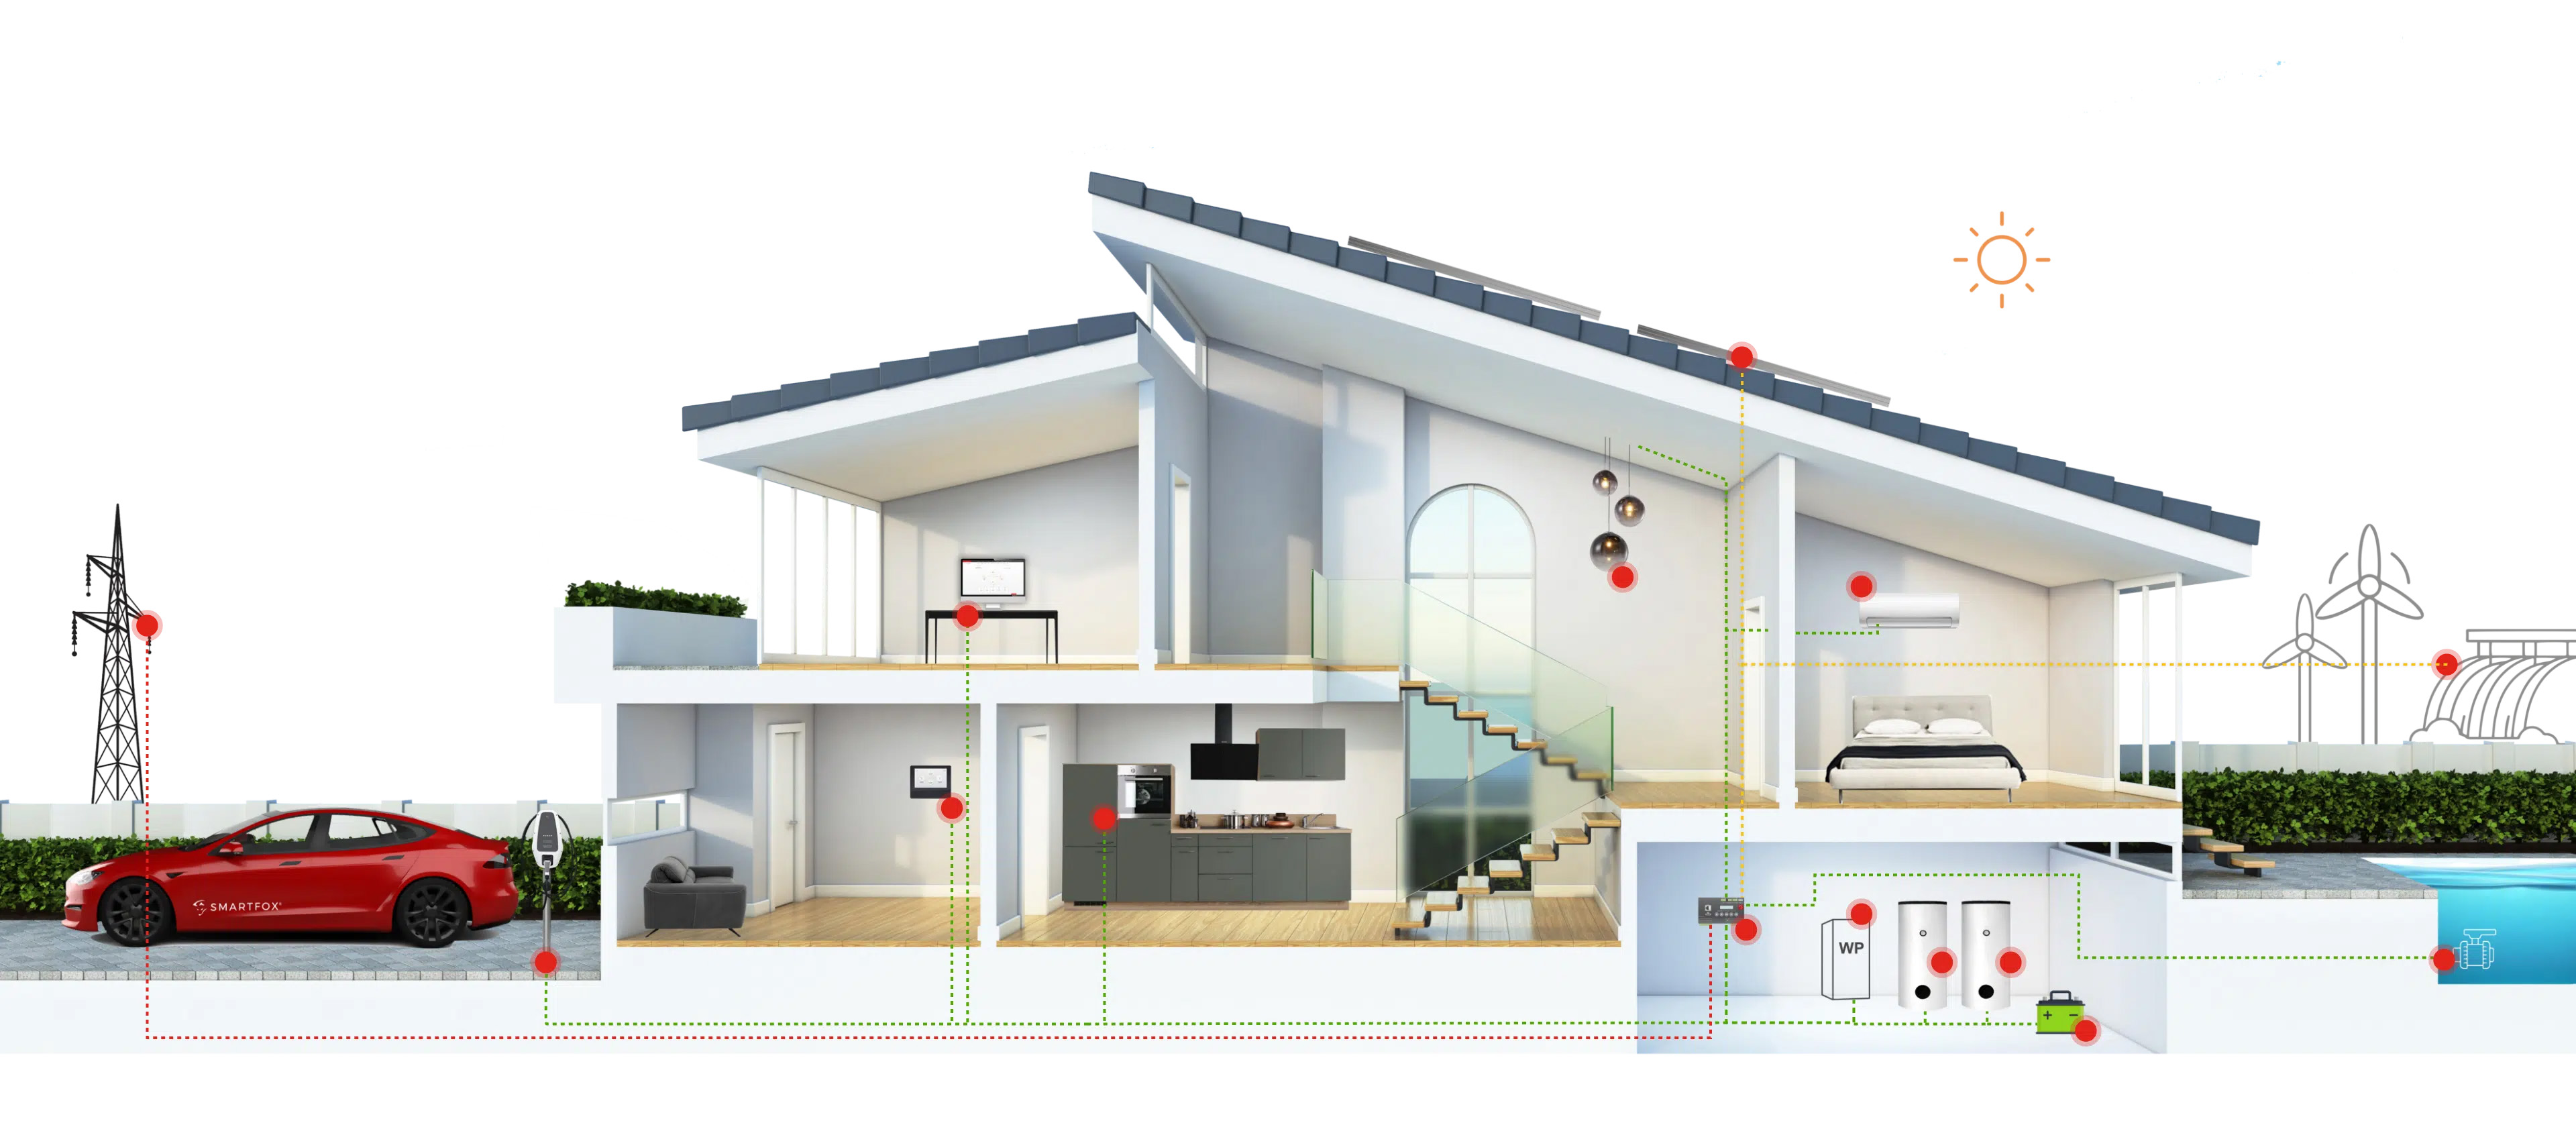 Uebersicht eines Hauses mit Integration der SMARTFOX Produkte